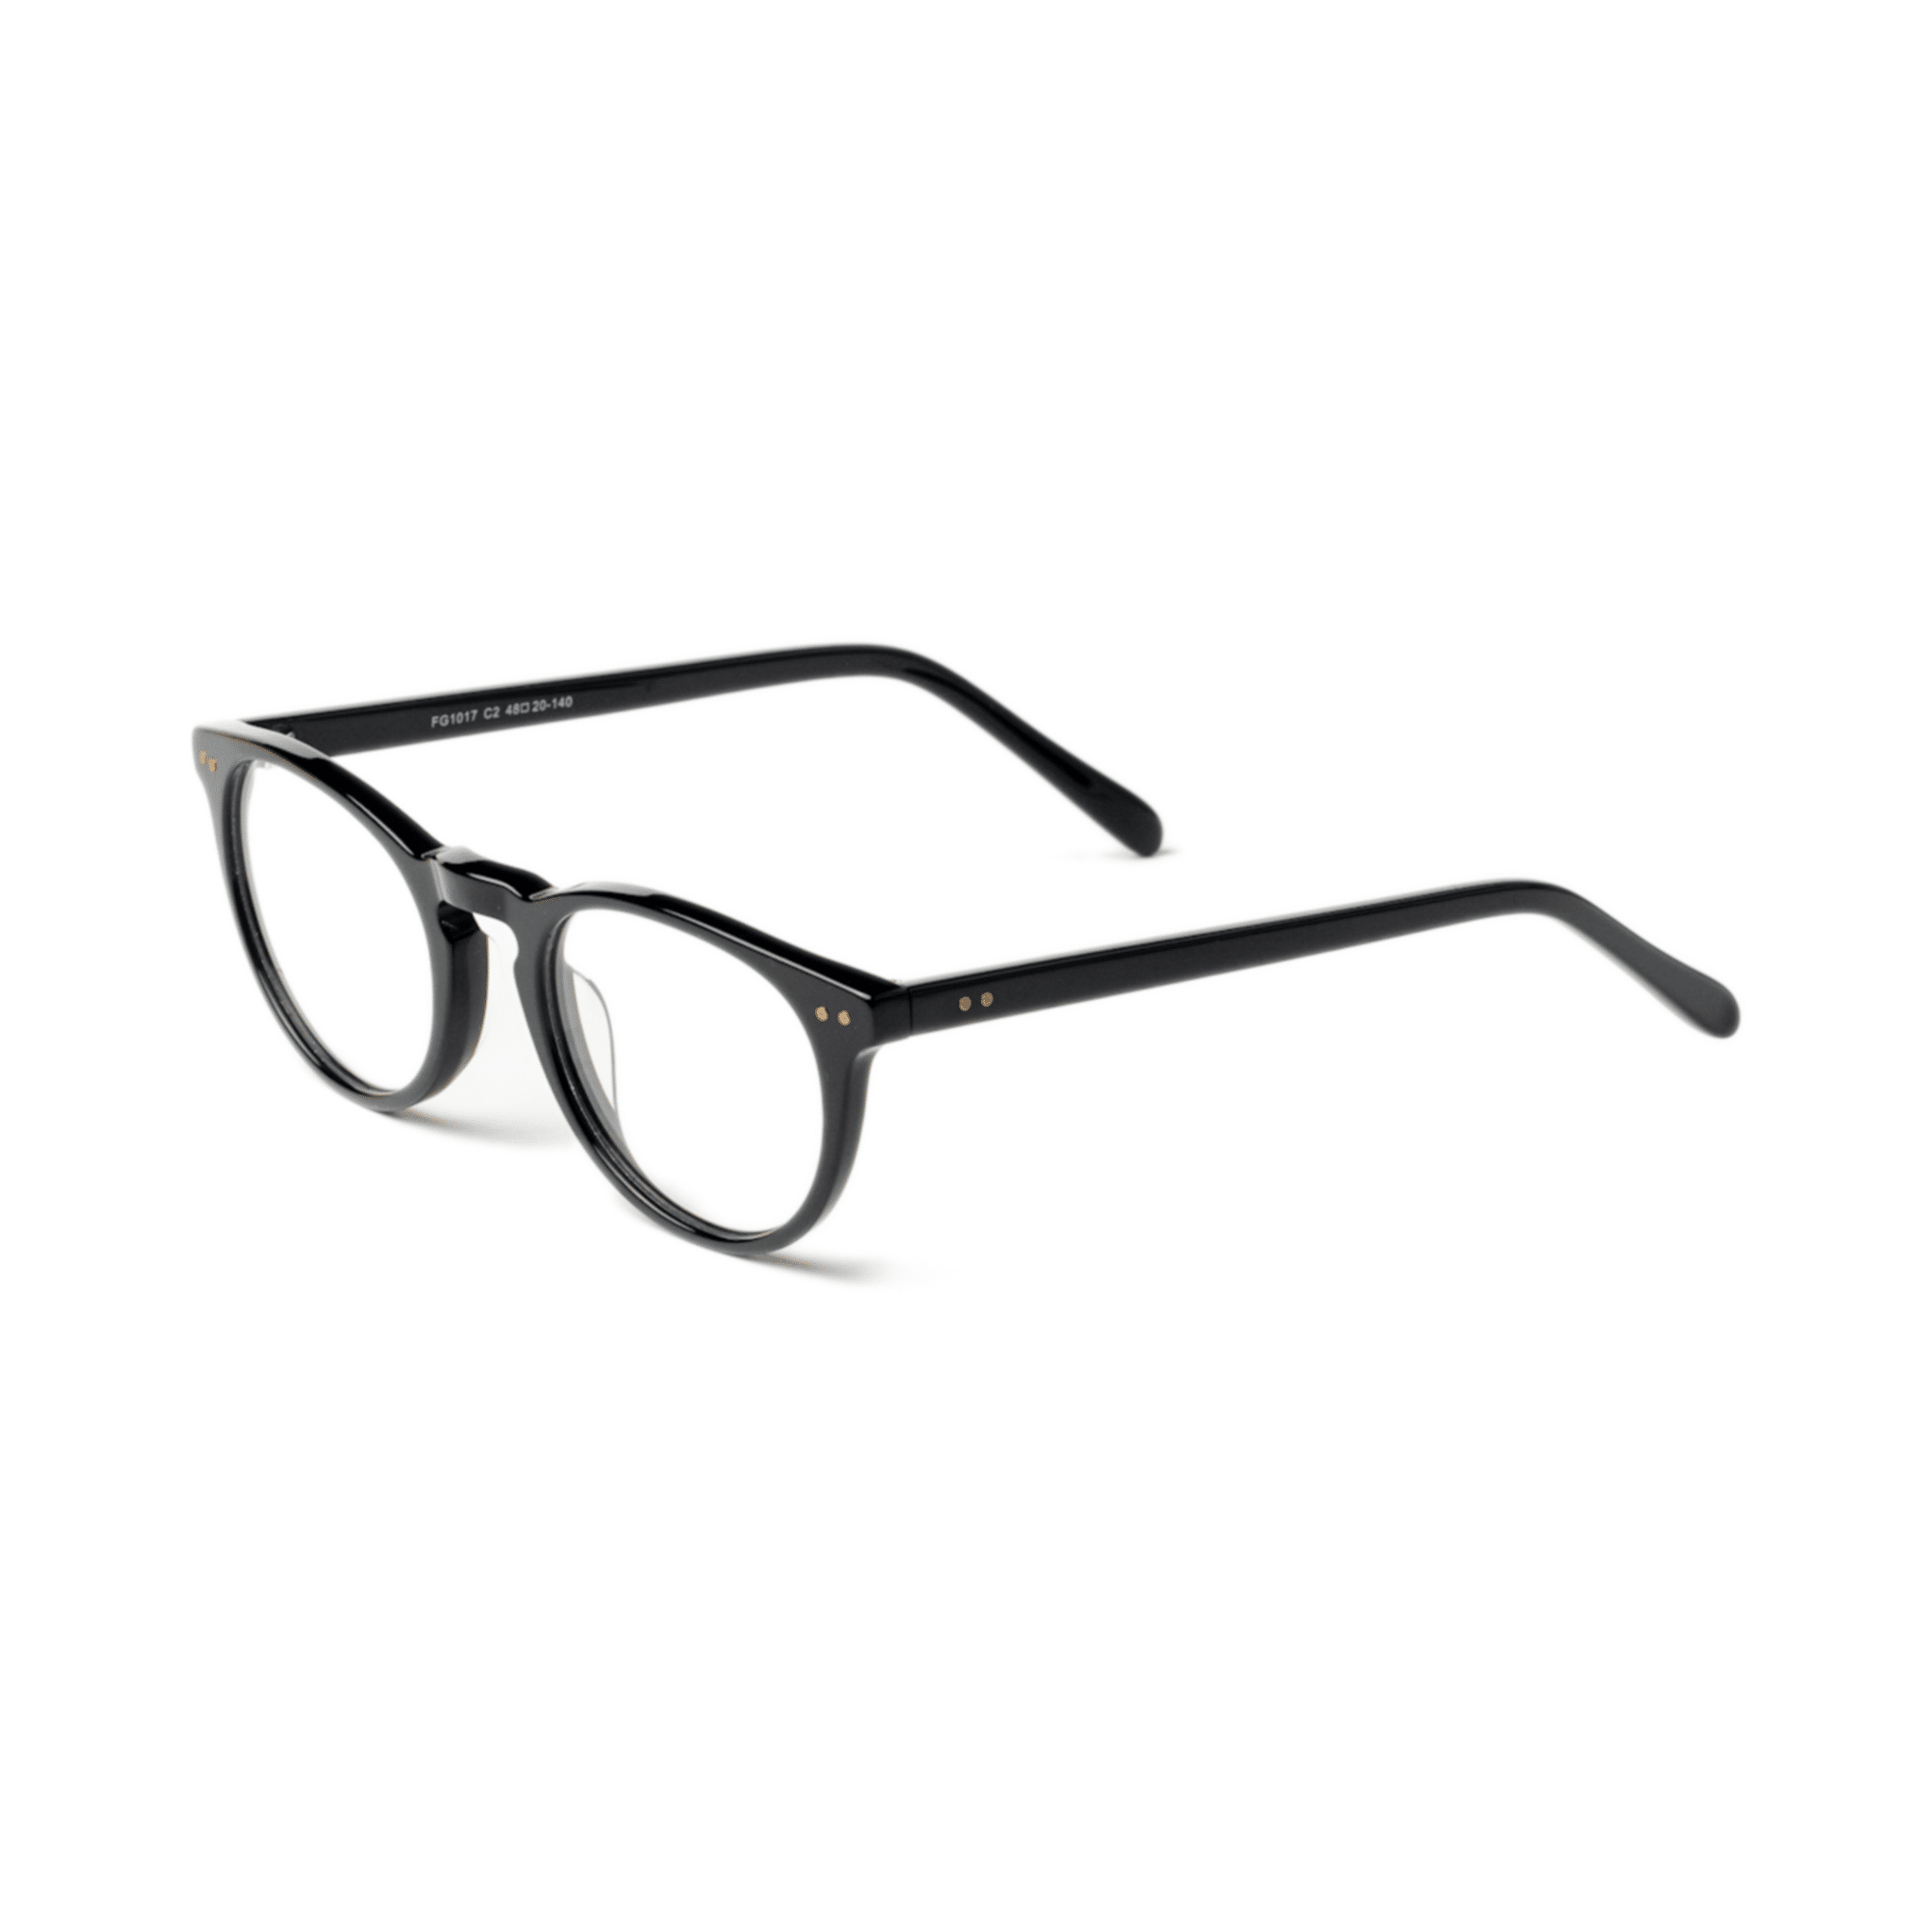 Spark Glasses - SafetyGearPro.com - #1 Online Safety Equipment Supplier